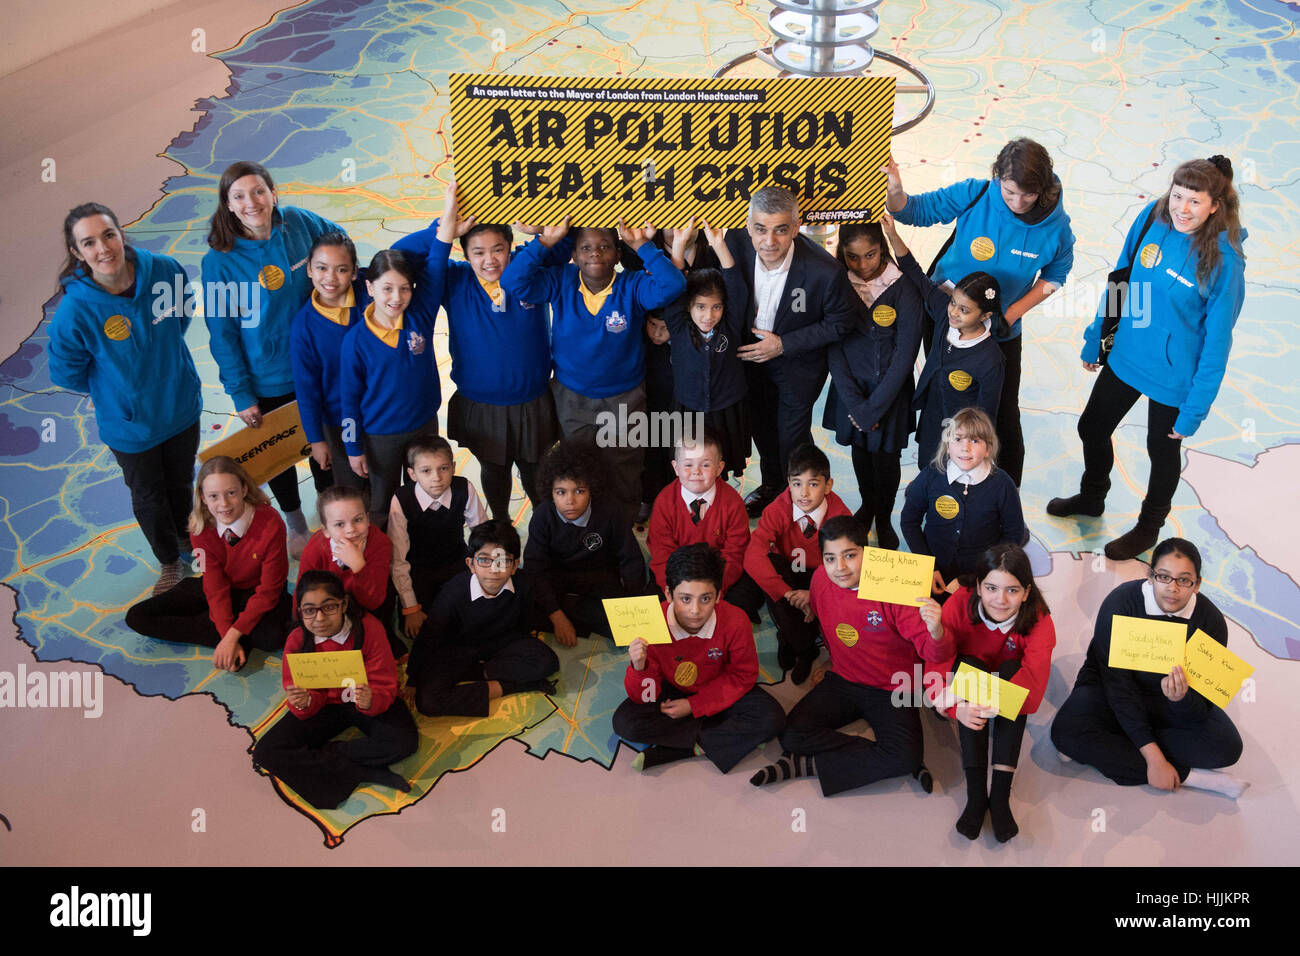 Schülerinnen und Schüler aus St Luke's CE Schule in Tower Hamlets, Ostlondon, Hand einen Brief an Bürgermeister von London Sadiq Khan unterzeichnet von mehr als hundert Schulleiter bat ihn der Hauptstadt Kinder vor Luftverschmutzung zu schützen. Stockfoto